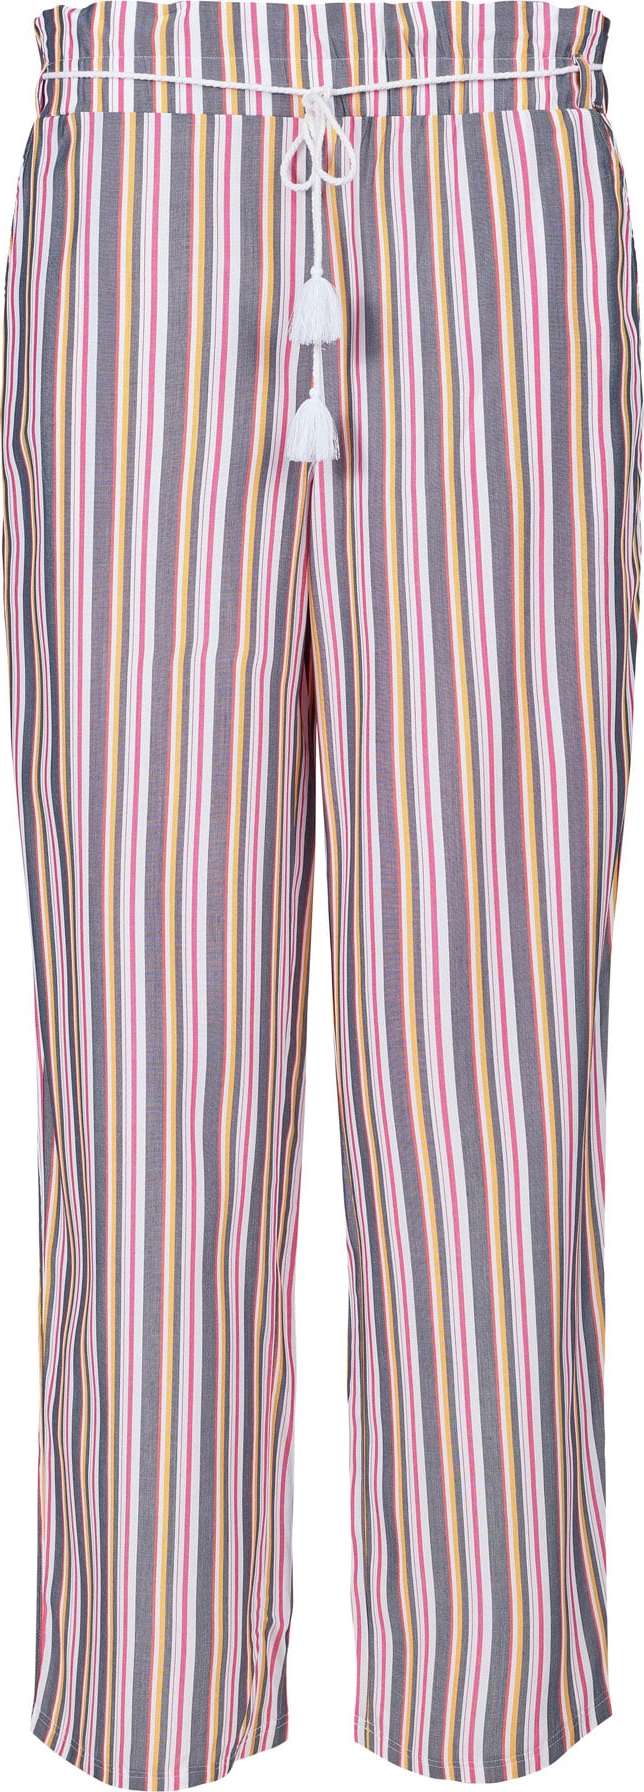 Skiny Pyžamové kalhoty fialová / mix barev